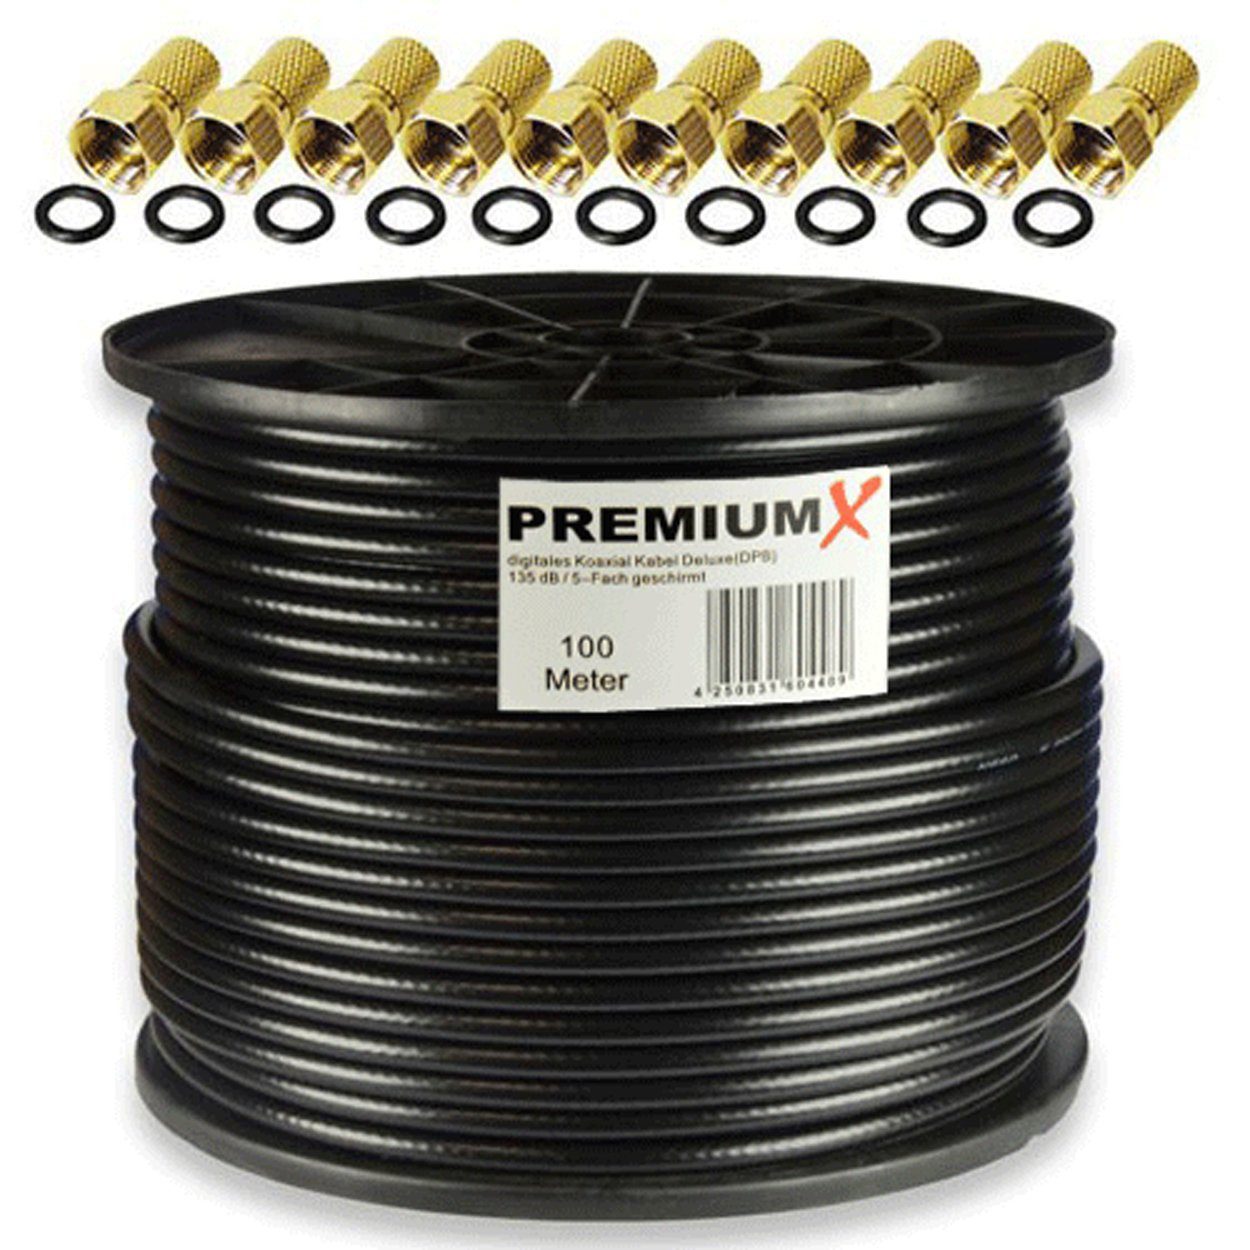 PremiumX 100m DELUXE PRO Koaxialkabel Schwarz 135dB 5-Fach Kupfer 10x F-Stecker SAT-Kabel